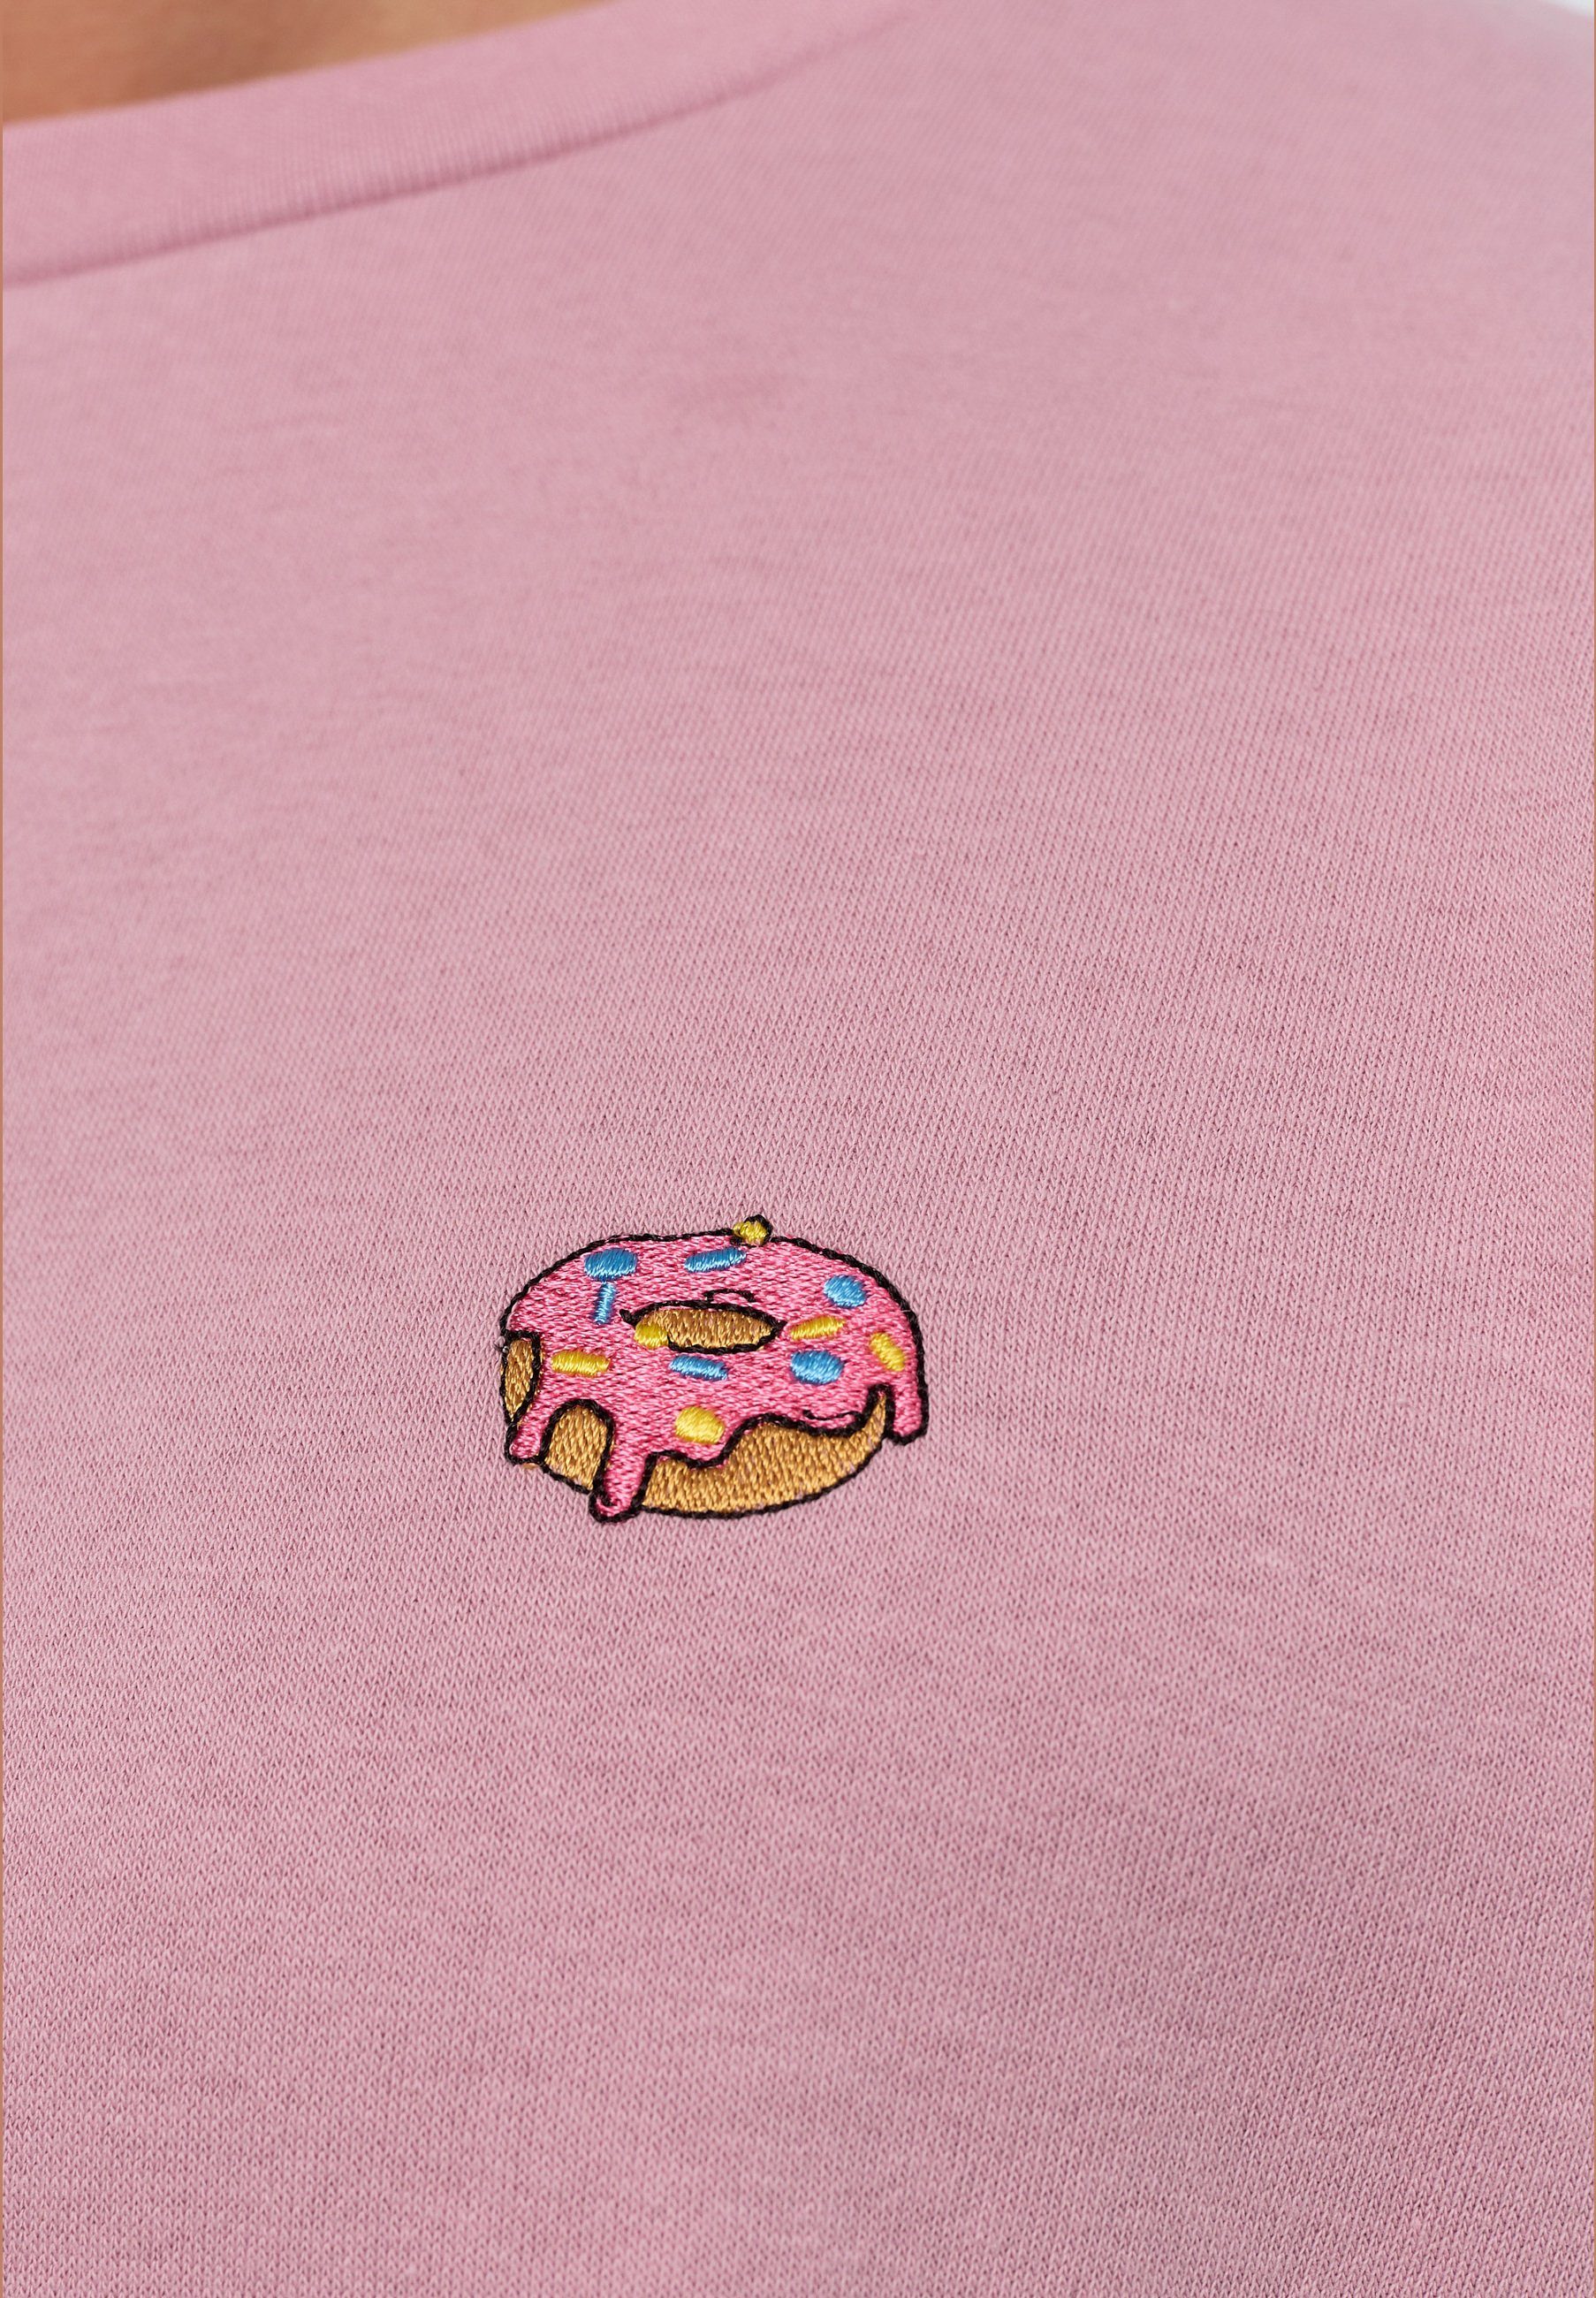 Bio-Baumwolle MIKON Donut zertifizierte Pink GOTS Sweatshirt